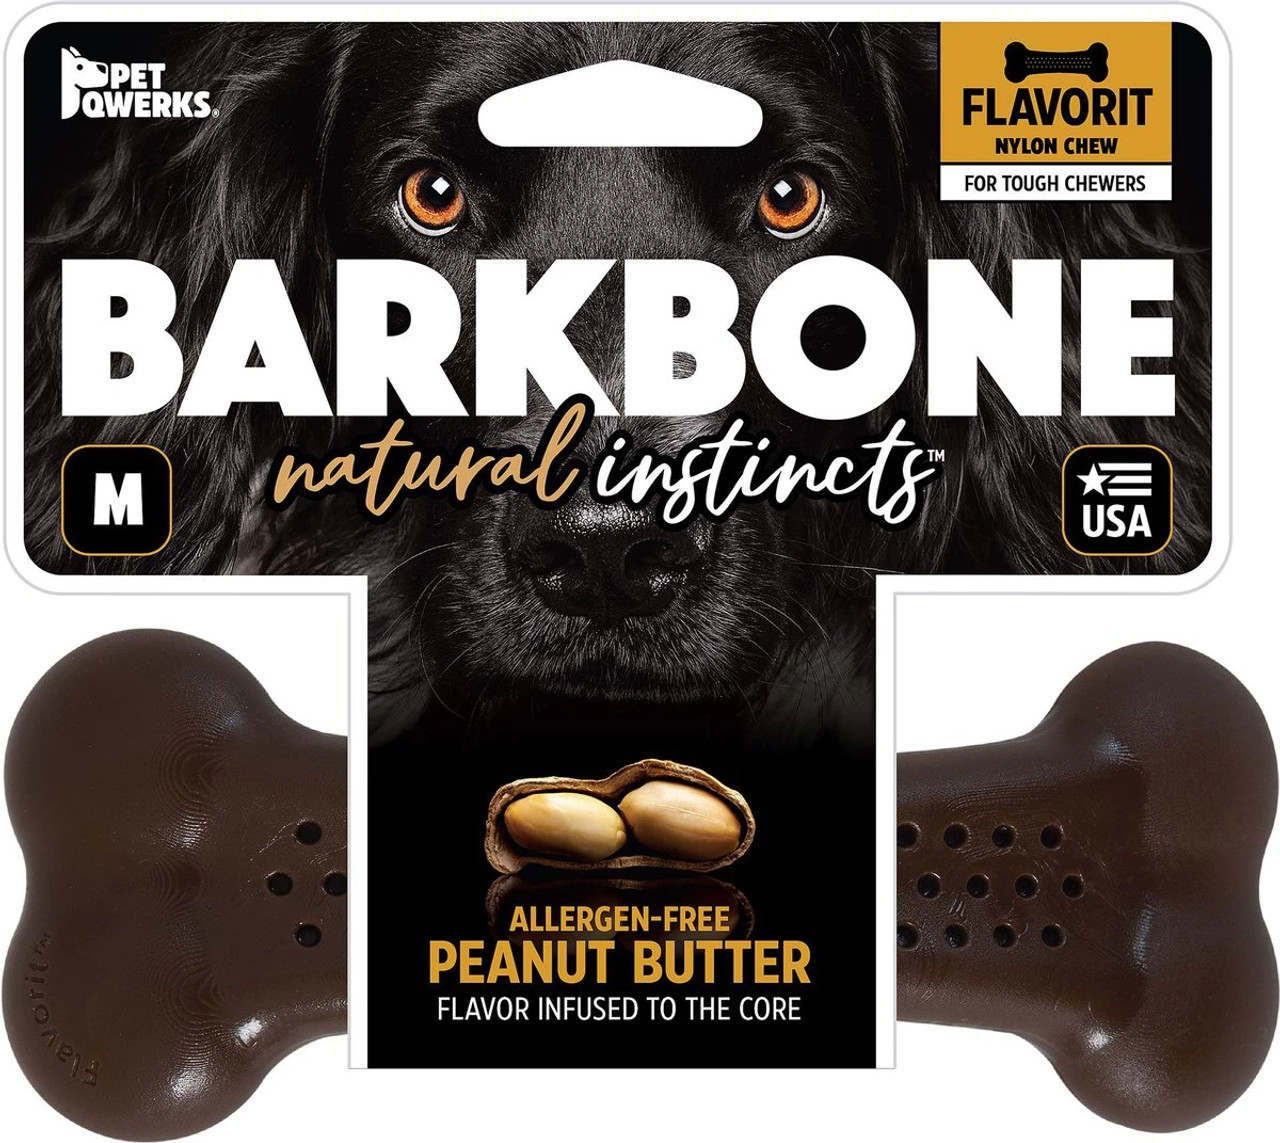 Pet Qwerks Wish Peanut Butter BarkBone